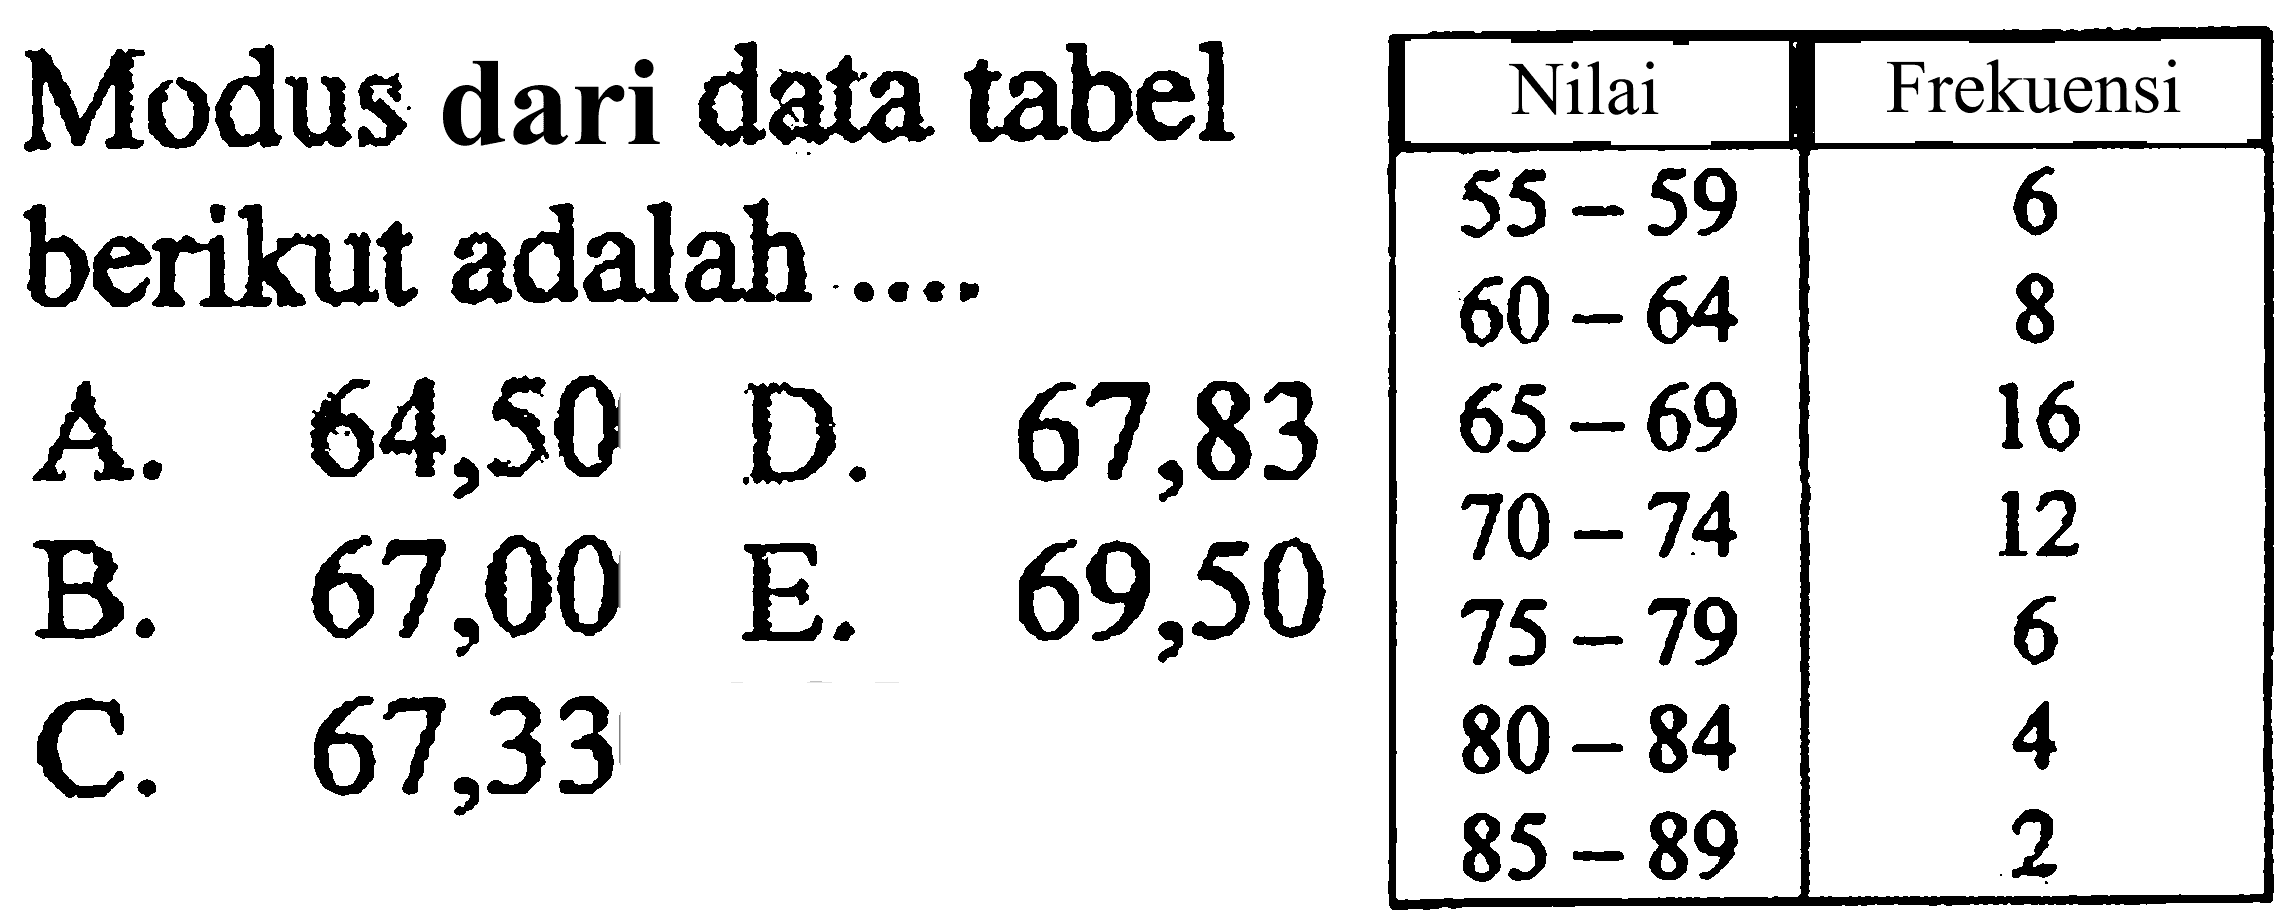 Modus dari data tabel berikut adalah ... Nilai Frekuensi 55-59 6 60-64 8 65-69 16 70-74 12 75-79 6 80-84 4 85-89 2